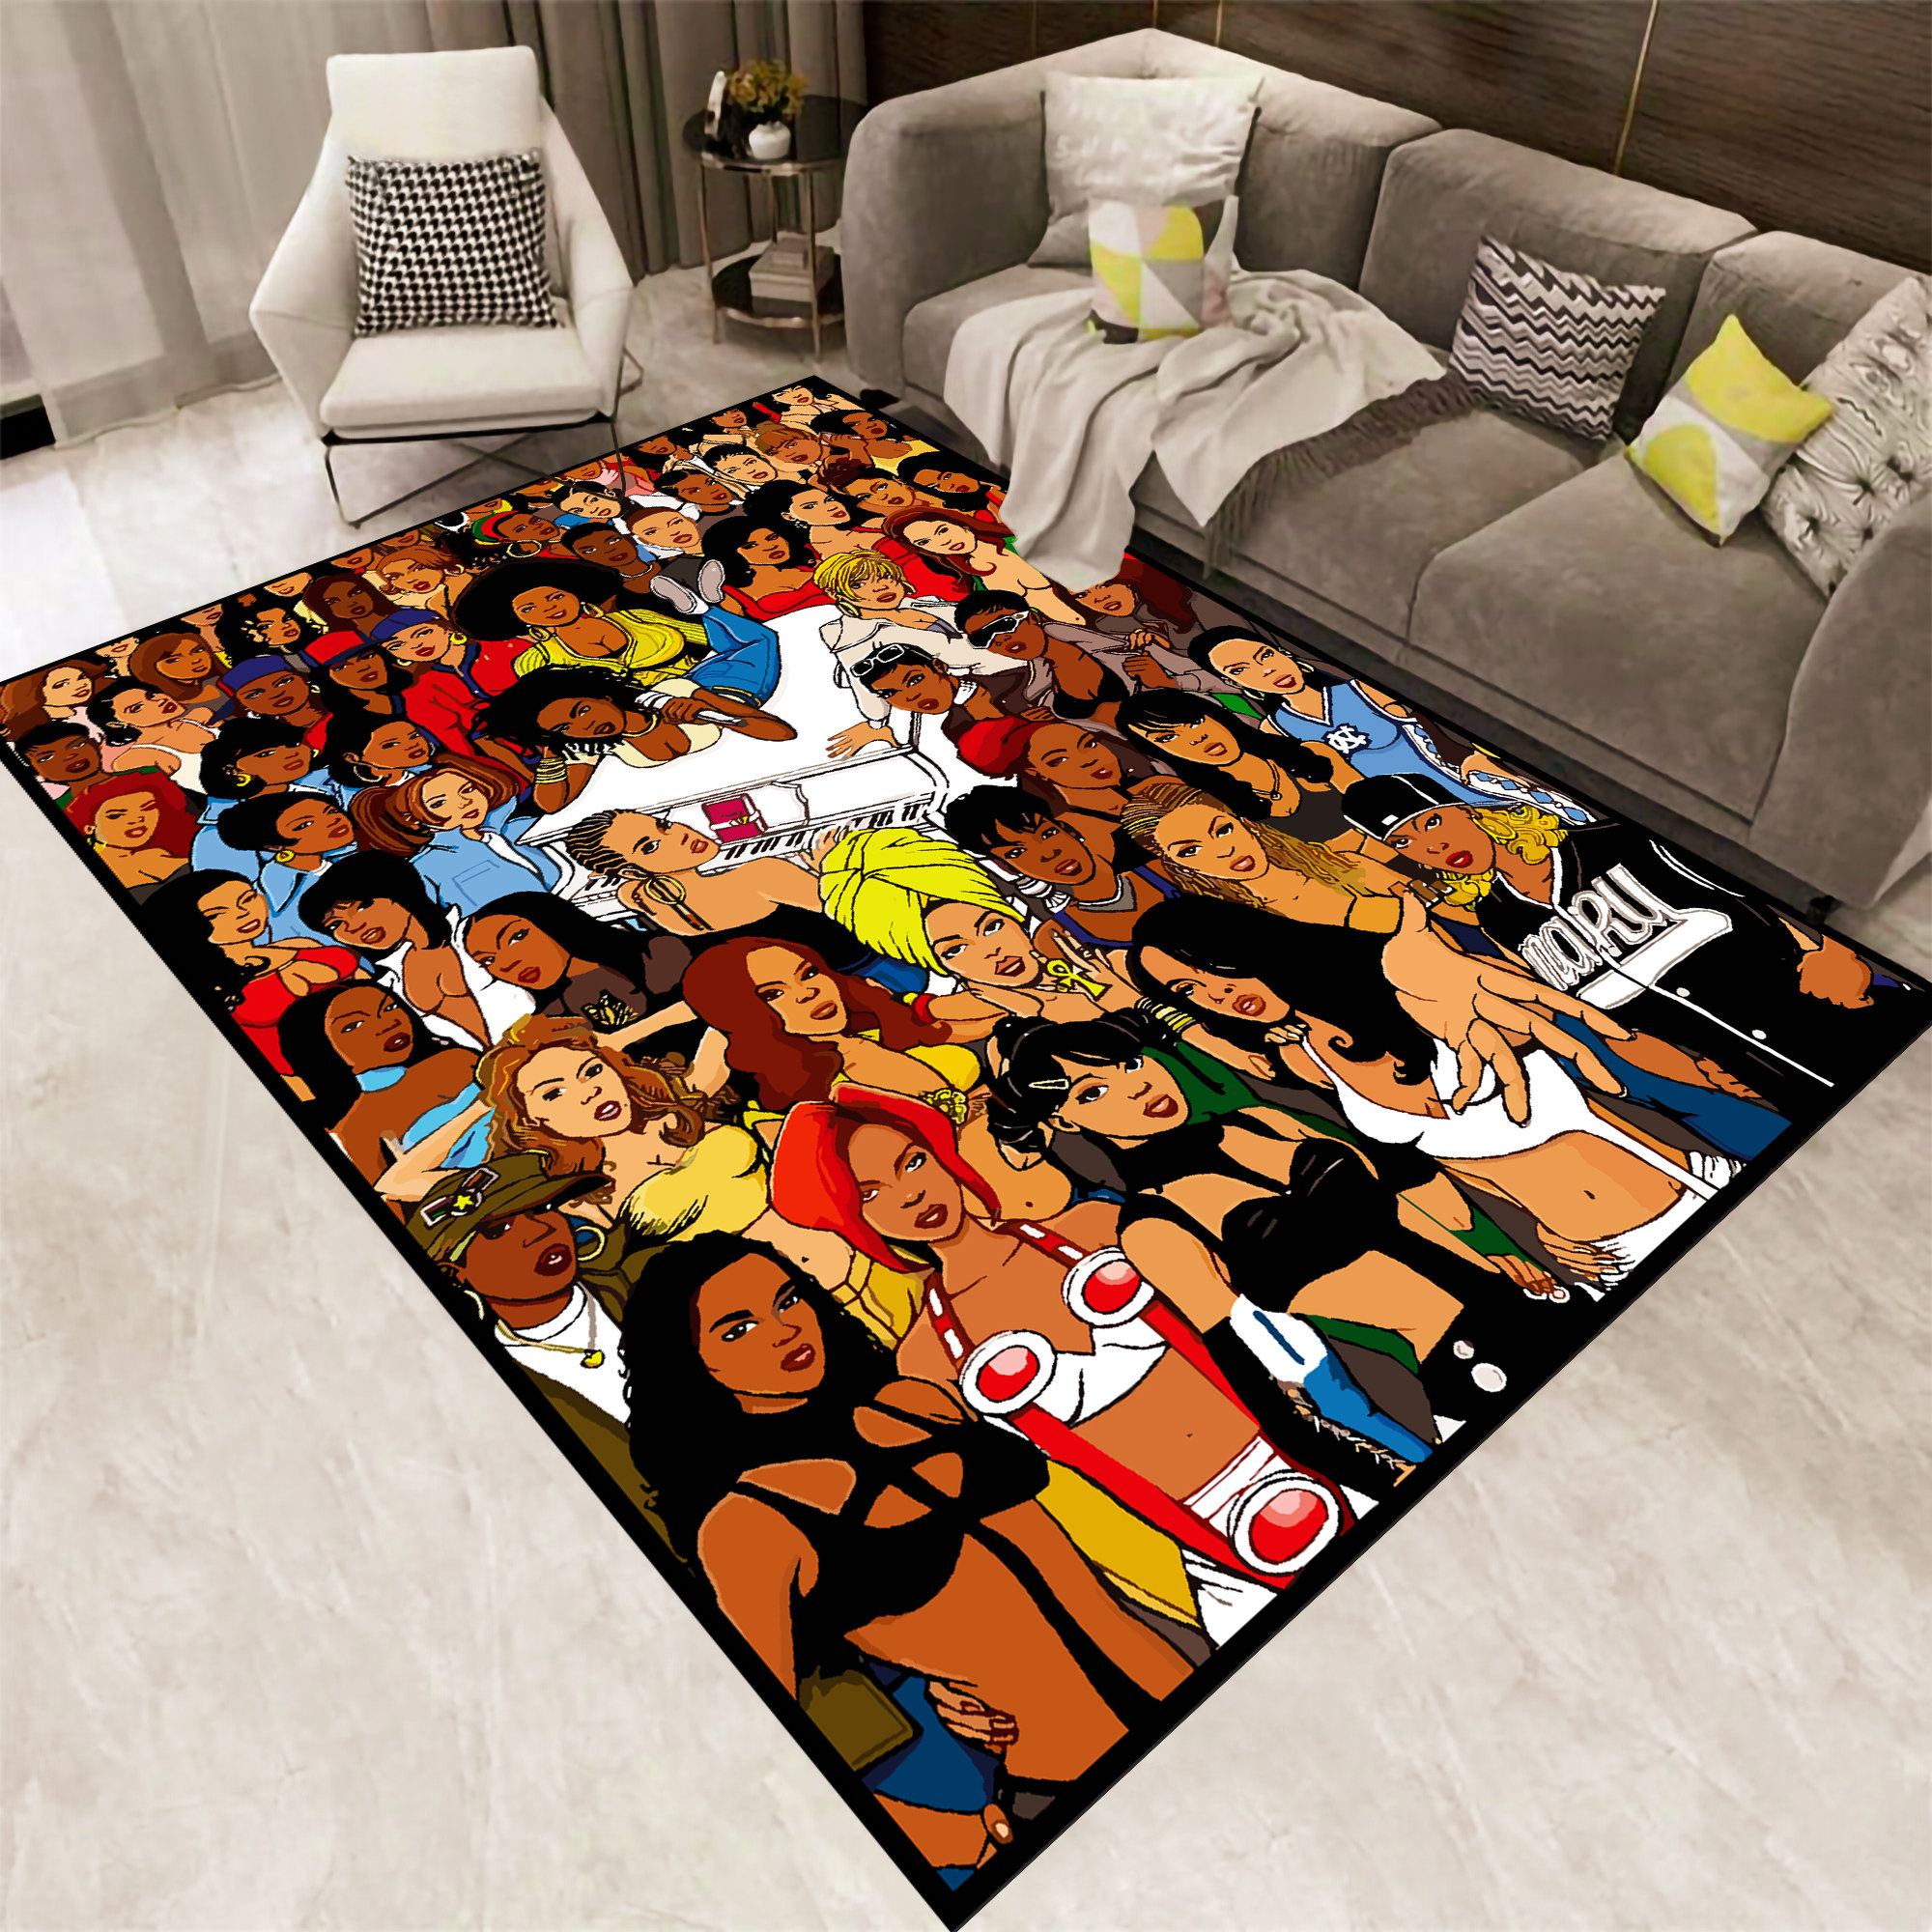 Hip Hop Art Rapper Legend Star Area Rug,Carpet Rug for Home Living